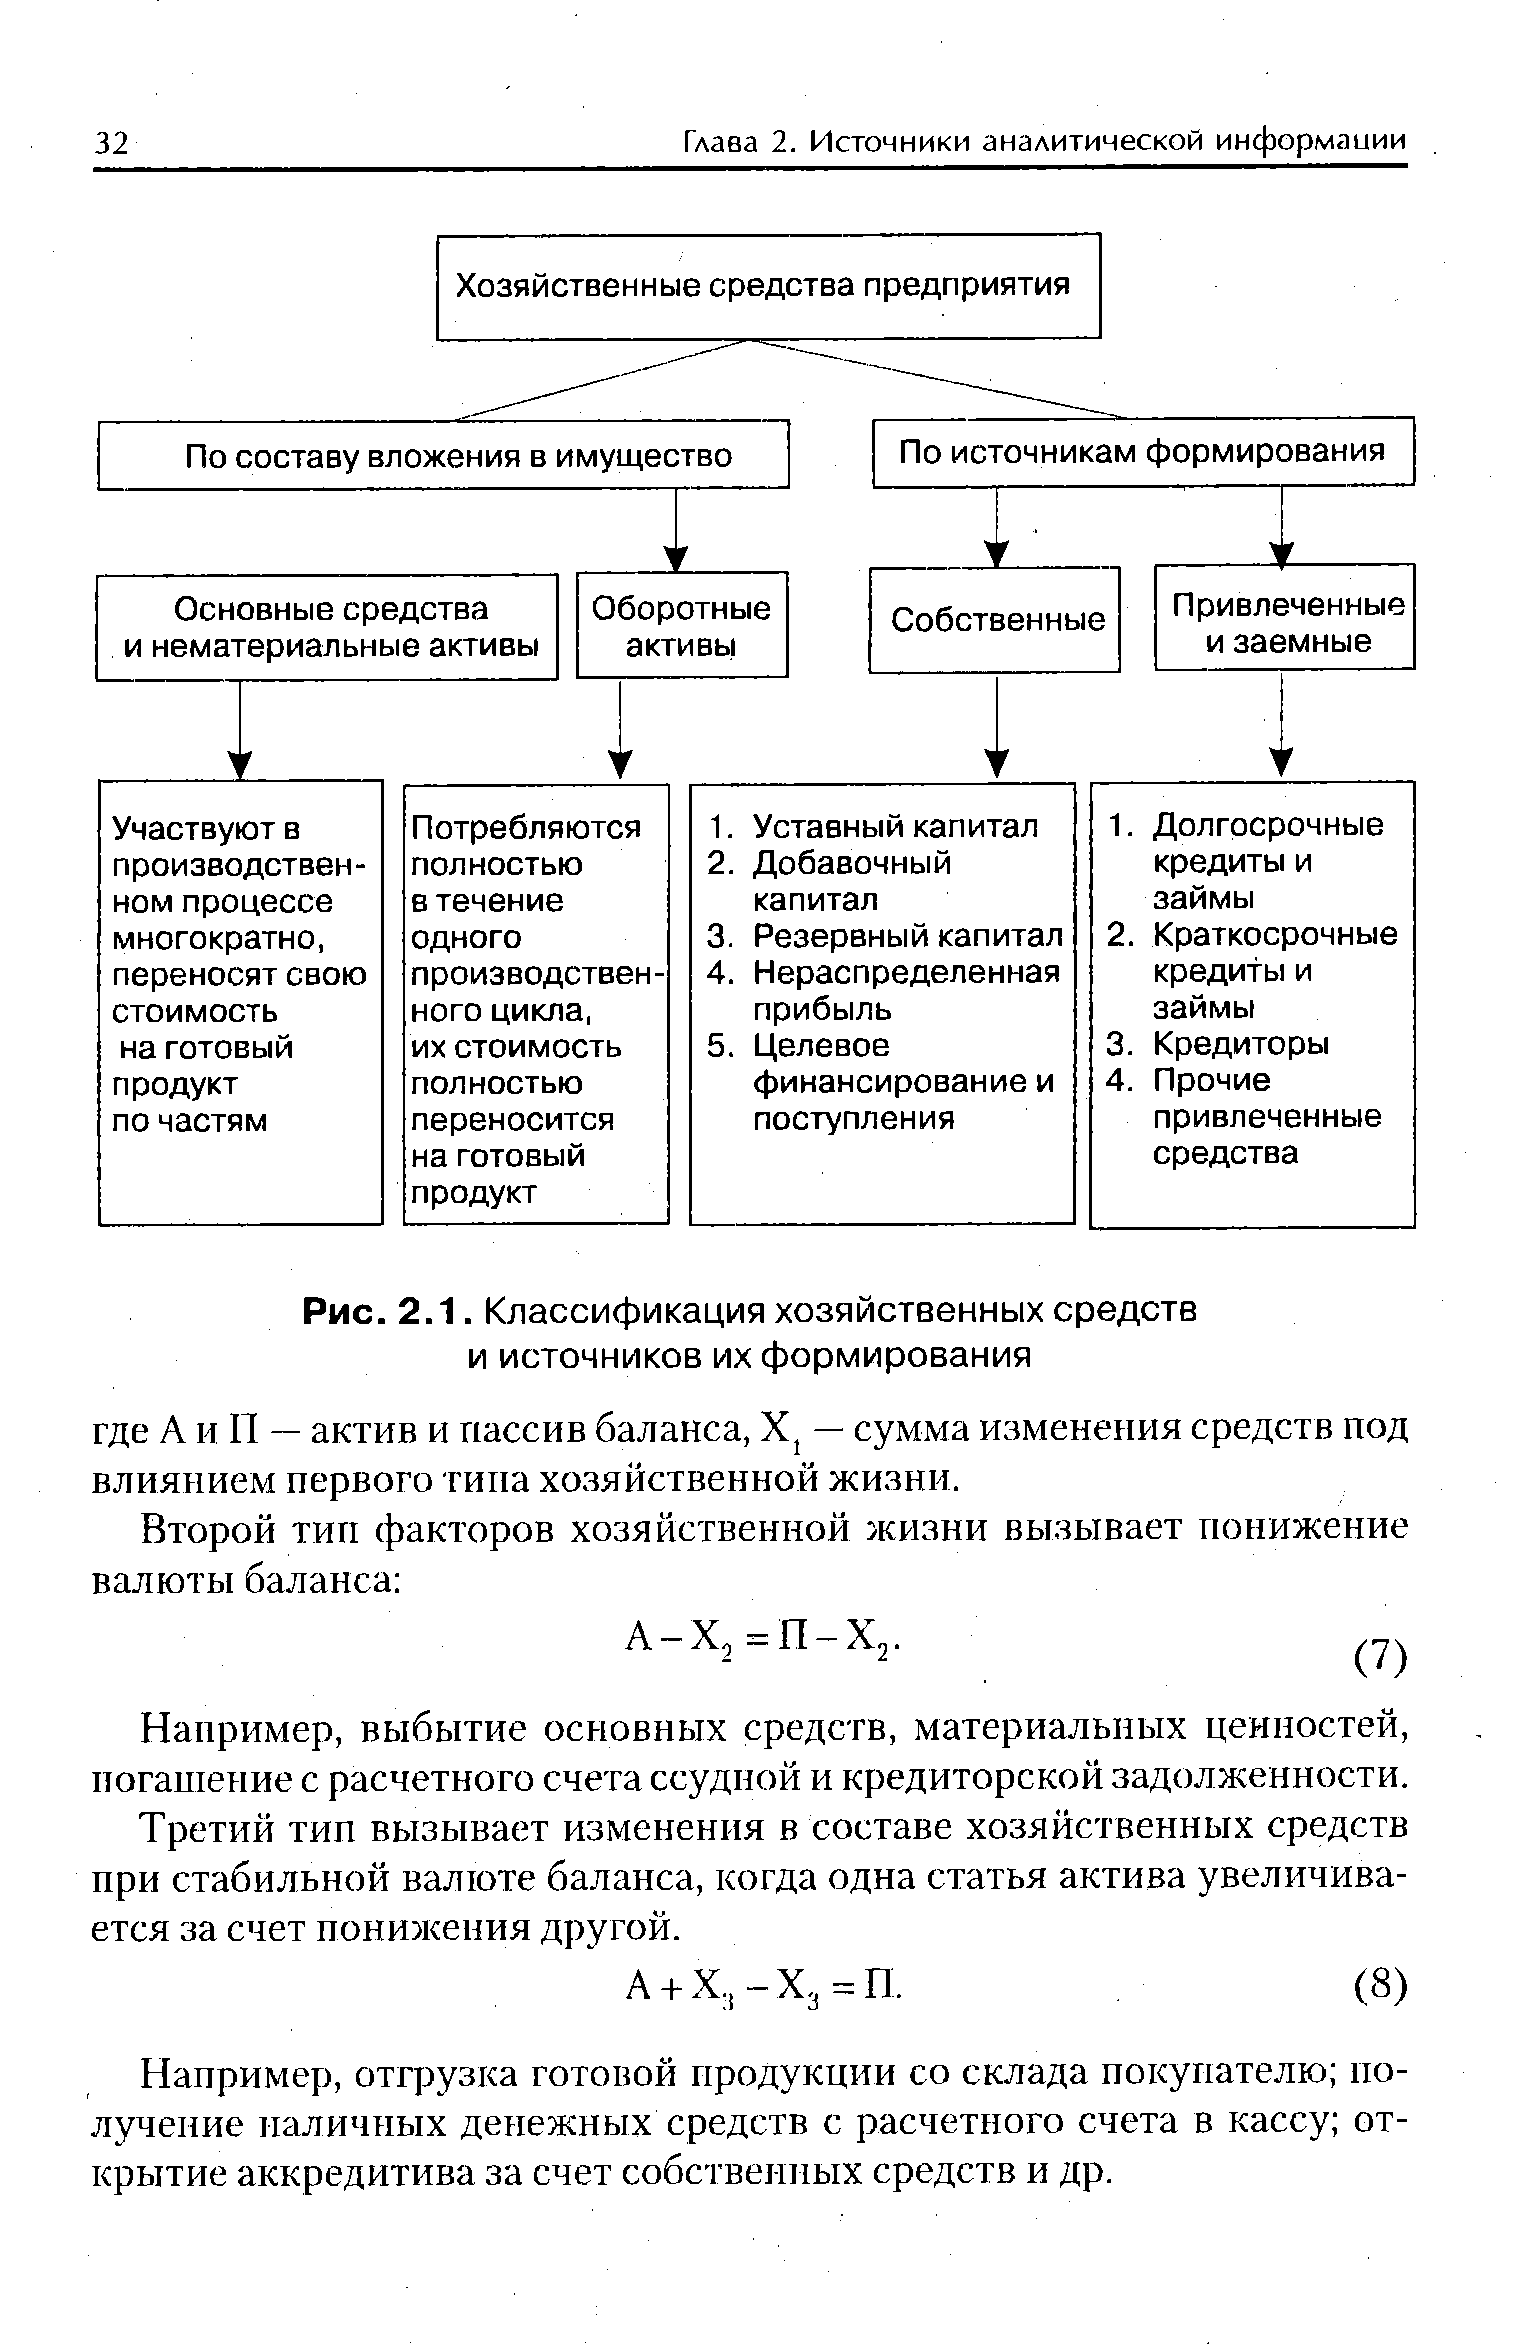 Рис. 2.1. Классификация хозяйственных средств и источников их формирования
